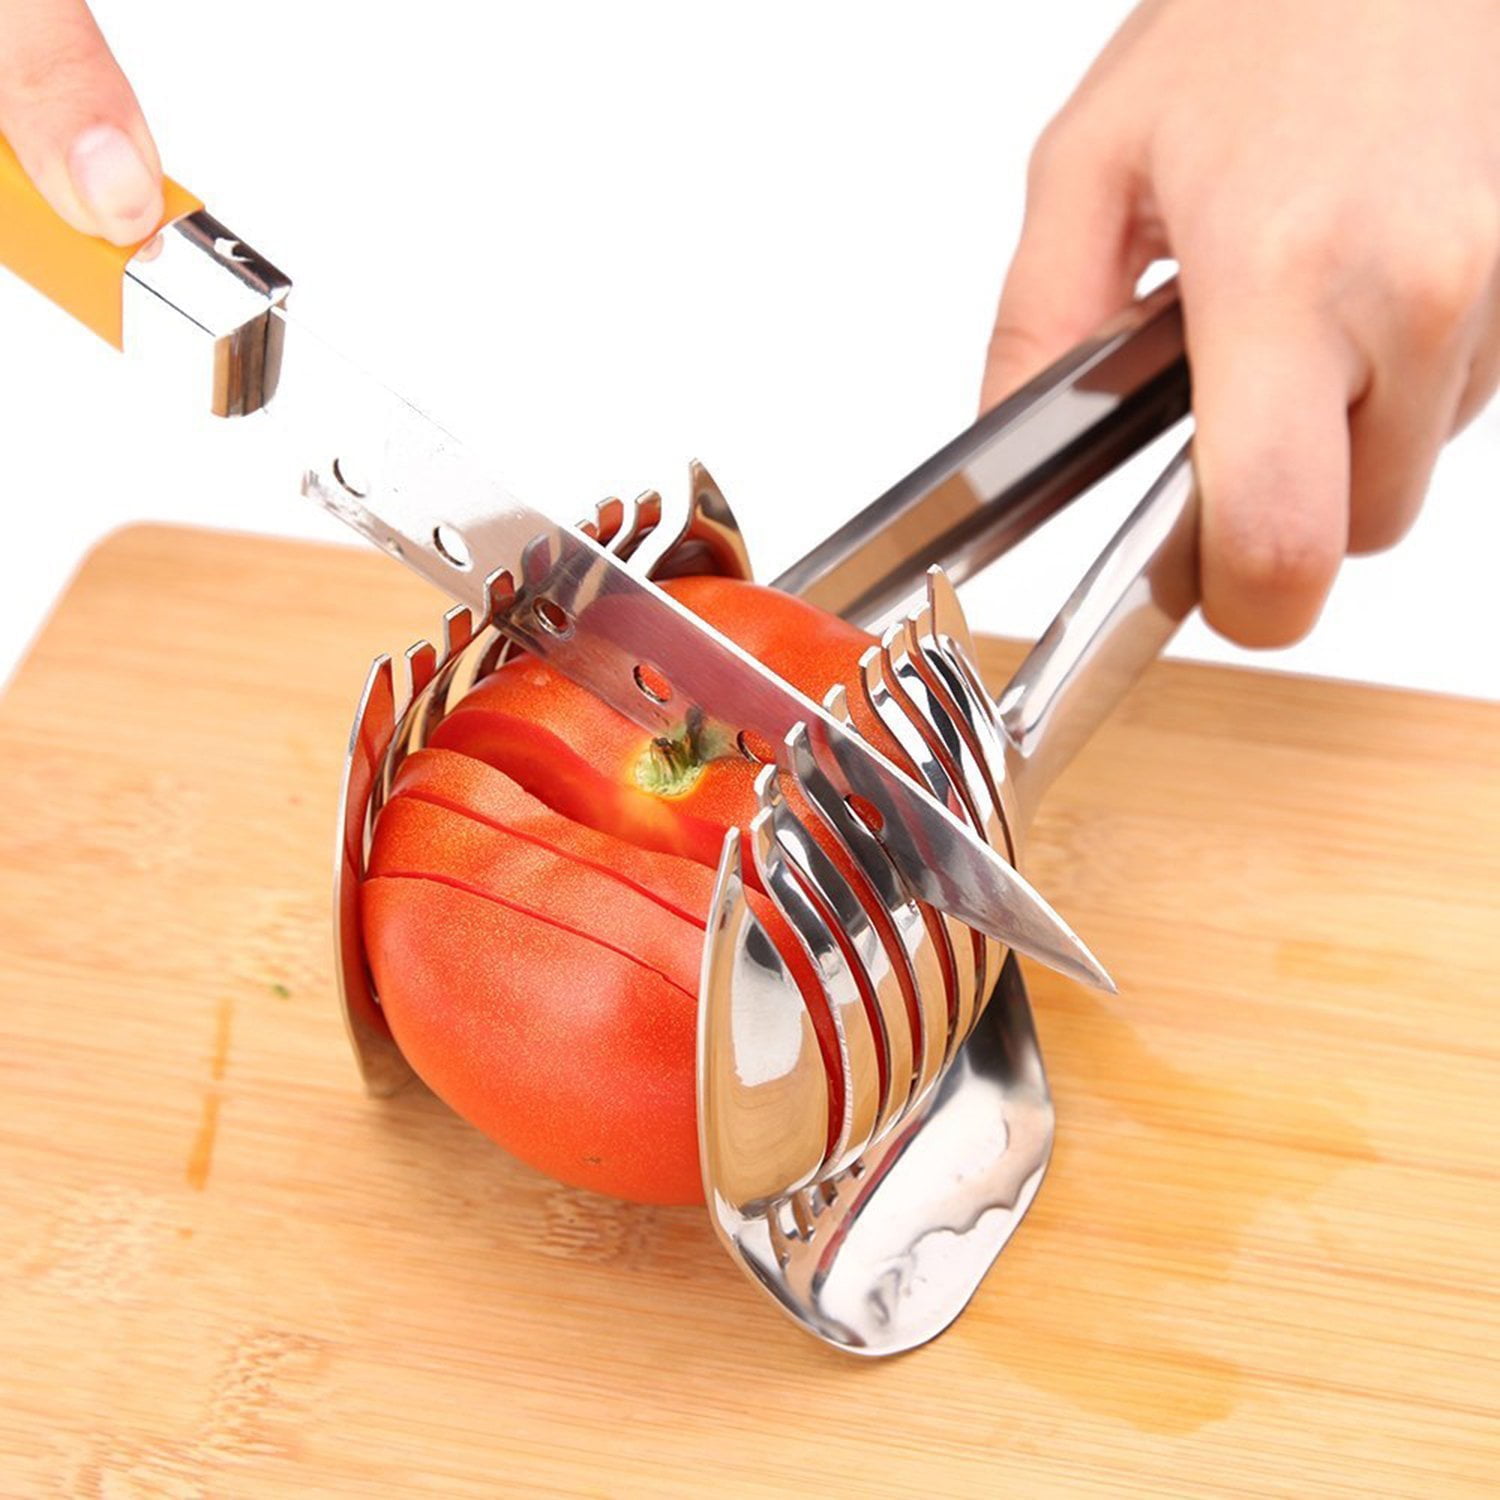 RORPOIR 4 Pcs Tomato Slicers for Home Use Egg Slicer Fruit Slicer